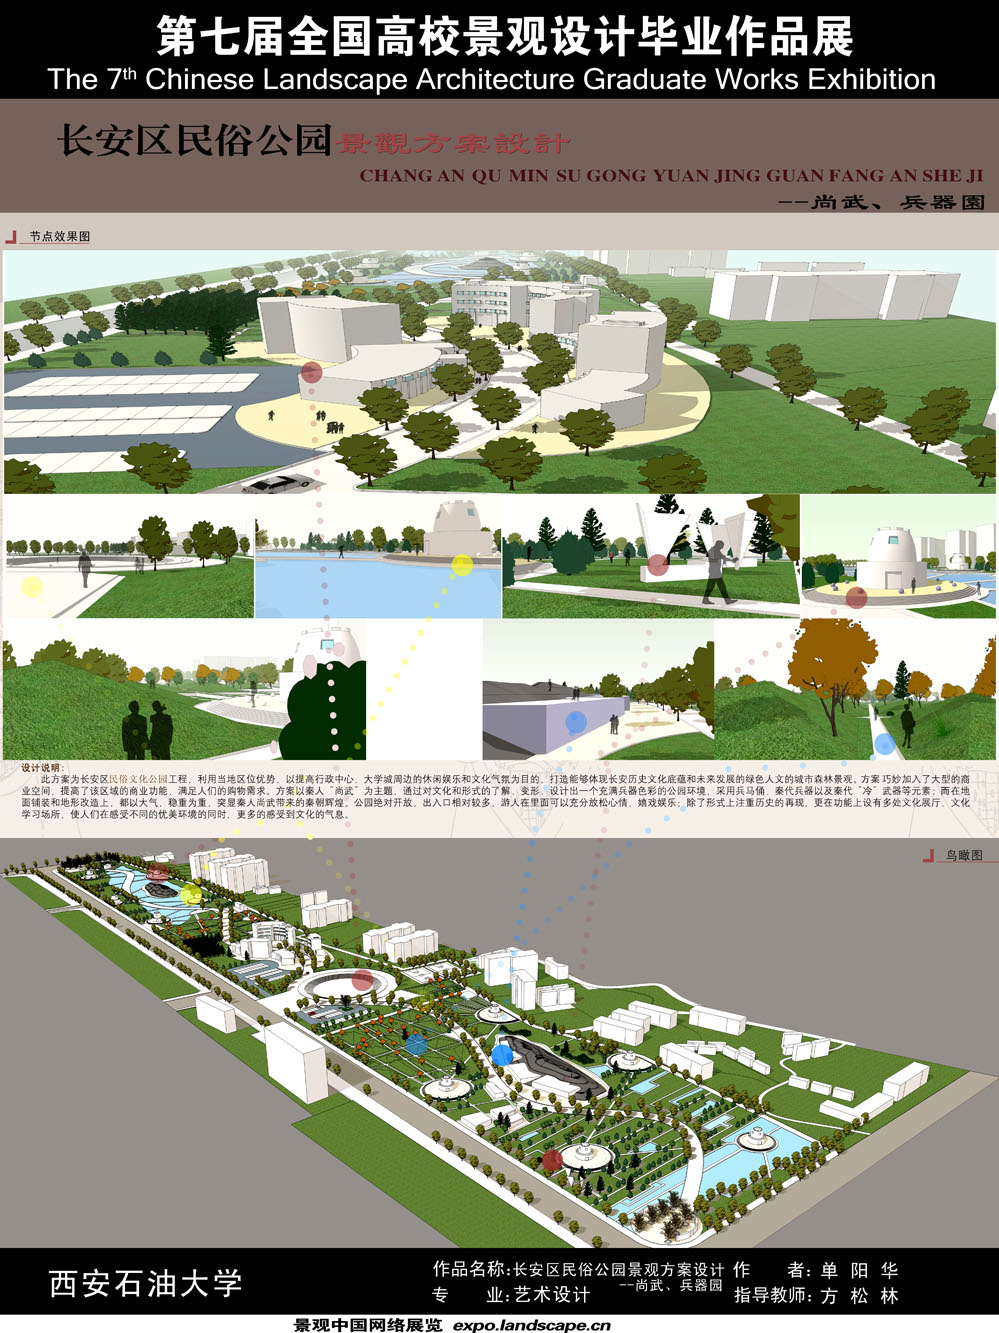 长安区民俗公园景观方案设计-尚武、兵器园-2